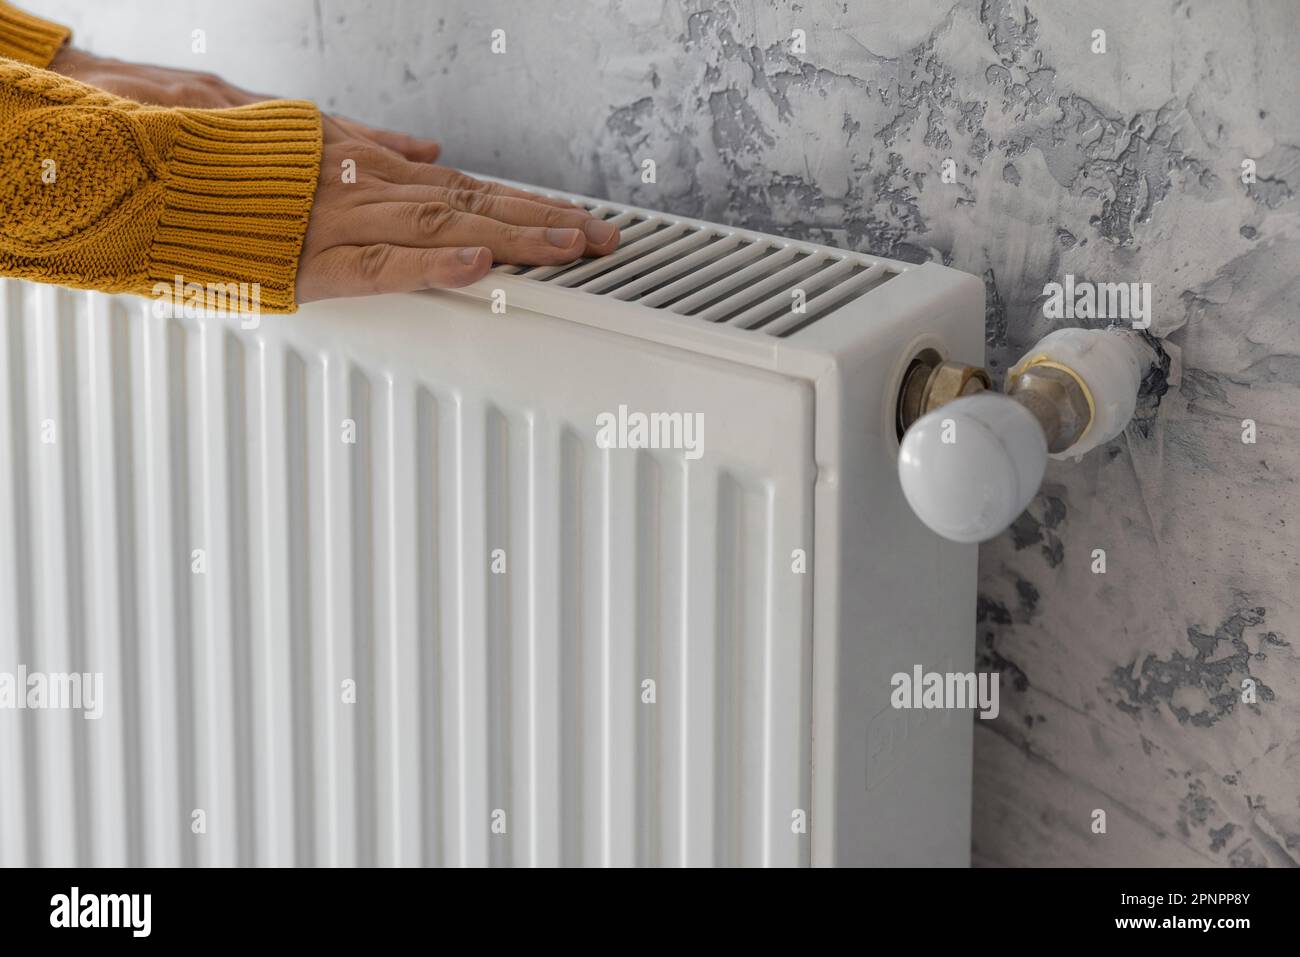 Homme en chandail jaune réchauffant ses mains sur le chauffage à la maison pendant les jours froids d'hiver. Un homme chauffe ses bras au-dessus du radiateur. Concept de chauffage Banque D'Images